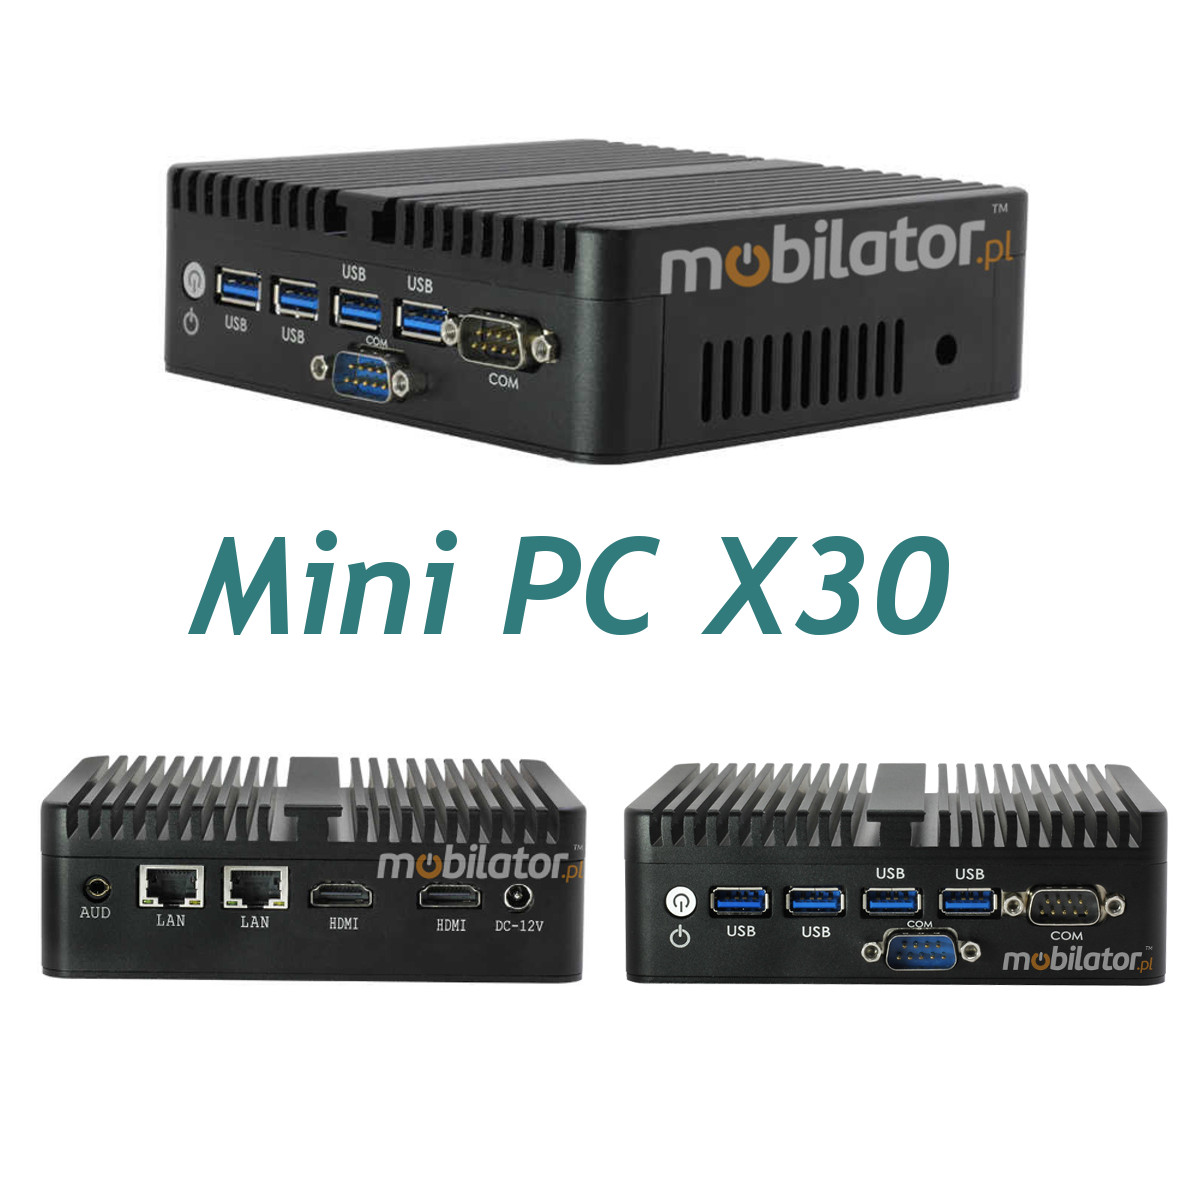 MiniPC yBOX-X30 Bezwentylatorowy Mały Komputer mobilator pl